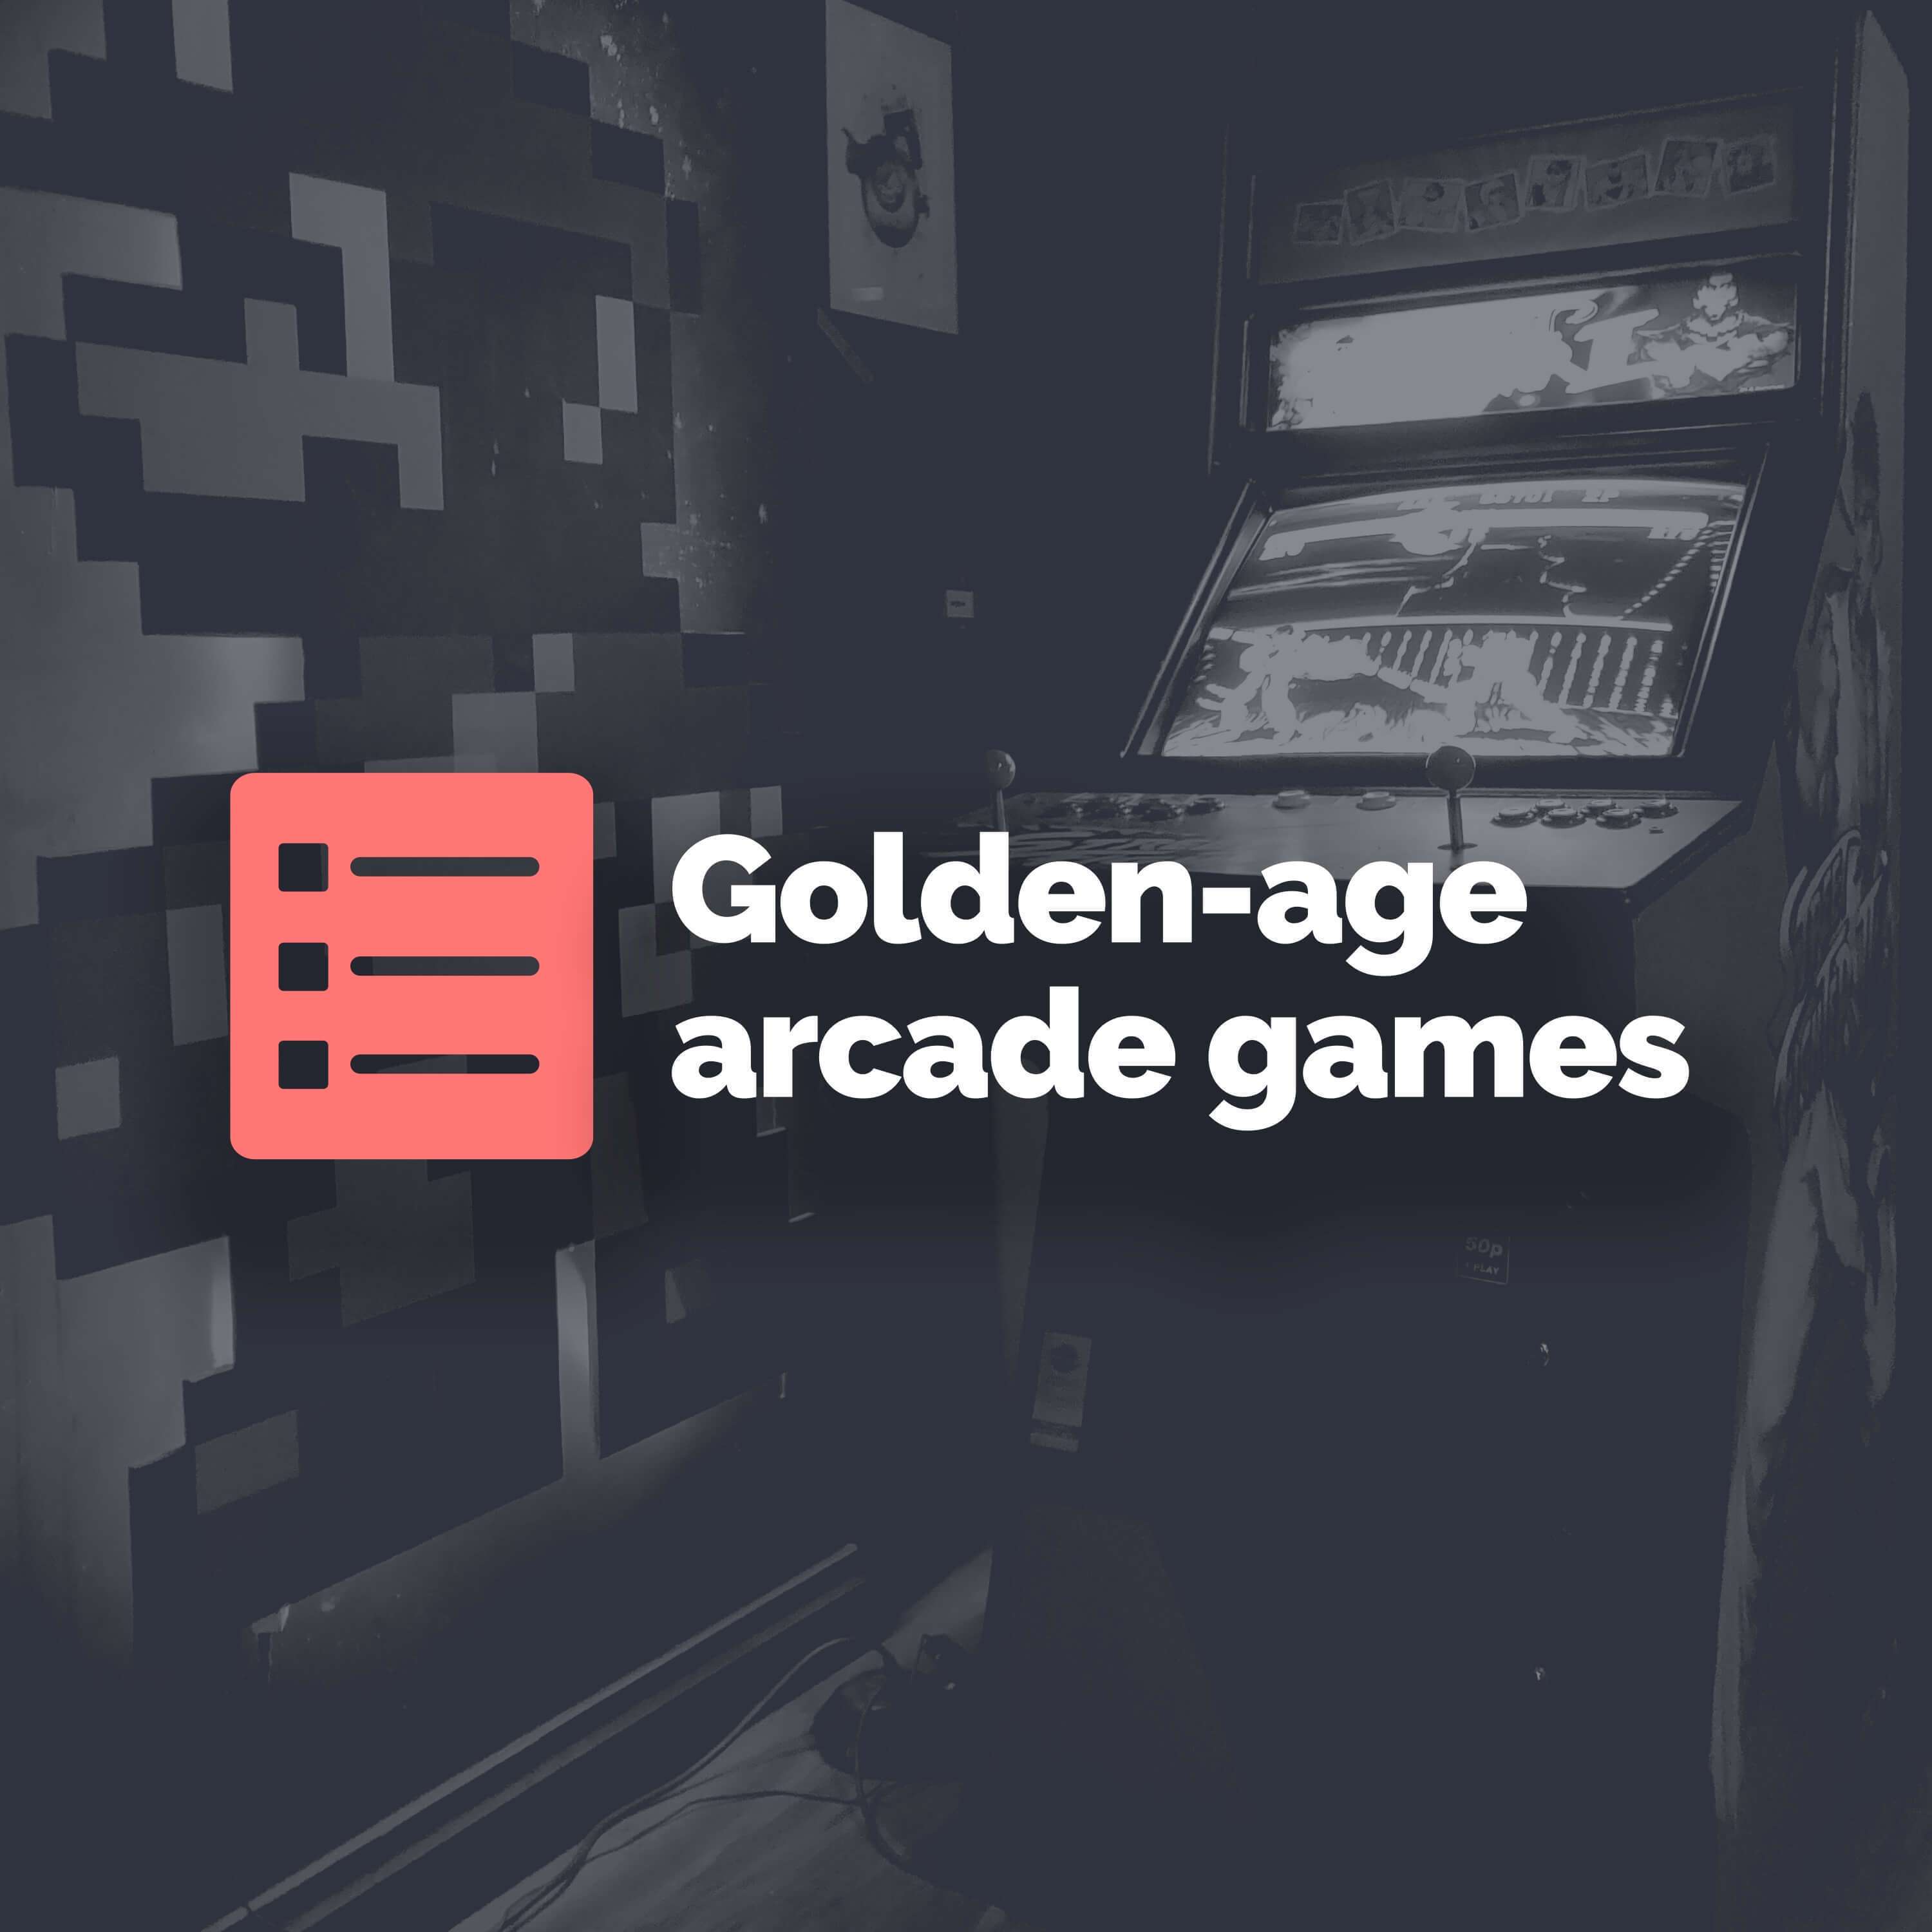 Top 5 golden-age arcade games